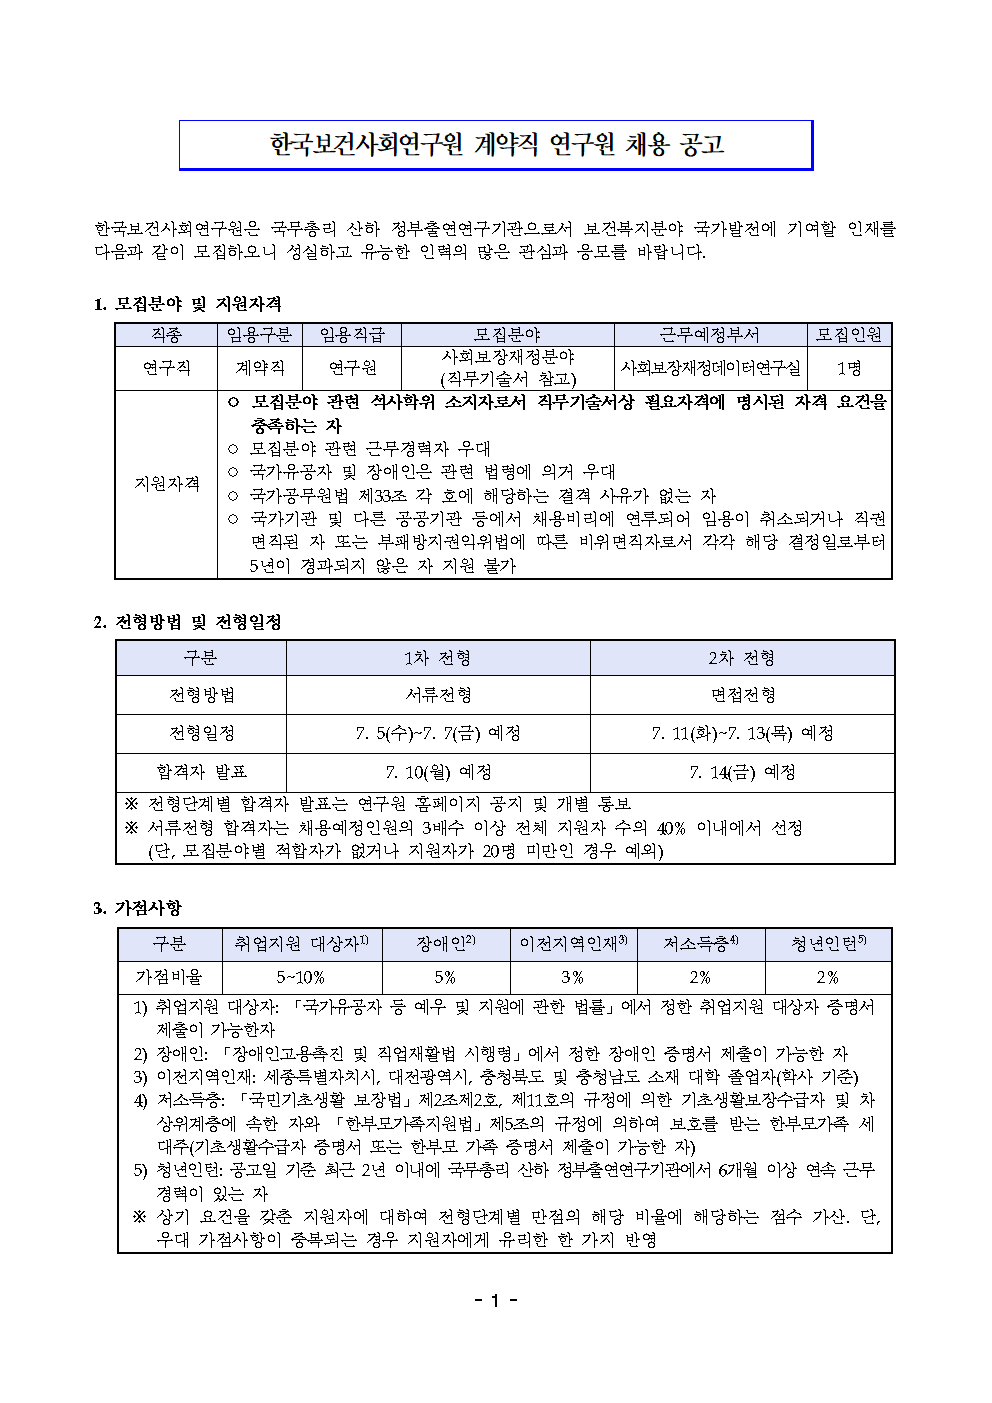 (1/2) 한국보건사회연구원 계약직 연구원 채용(사회보장재정데이터연구실) - 자세한 내용은 하단 참조